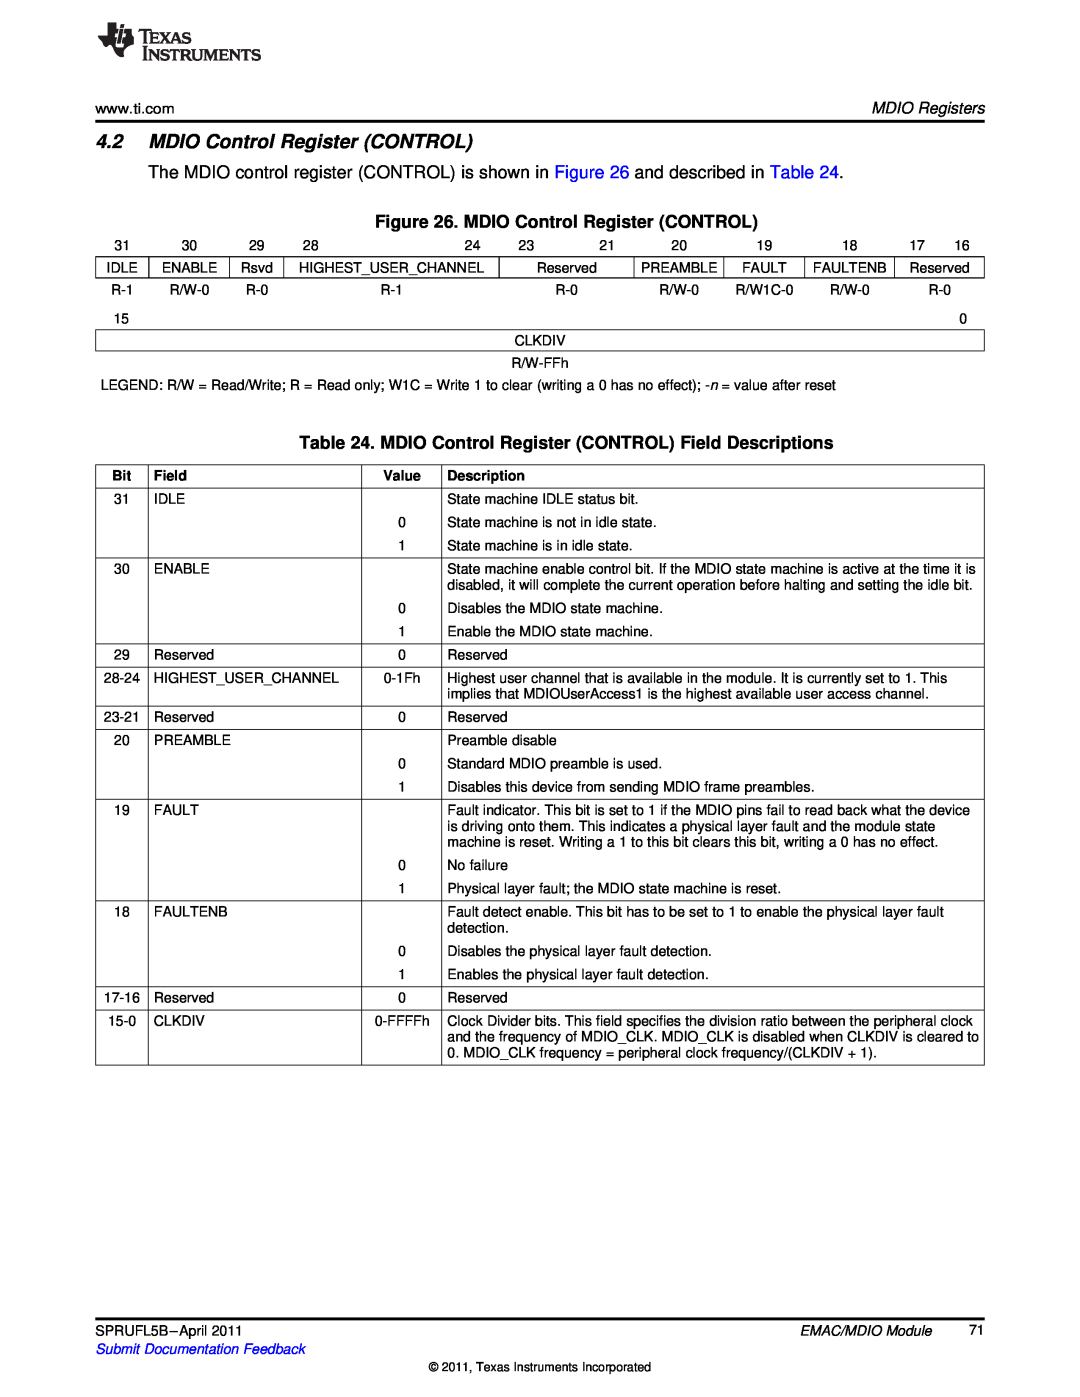 Texas Instruments TMS320C674X manual MDIO Control Register CONTROL Field Descriptions, MDIO Registers, Value 